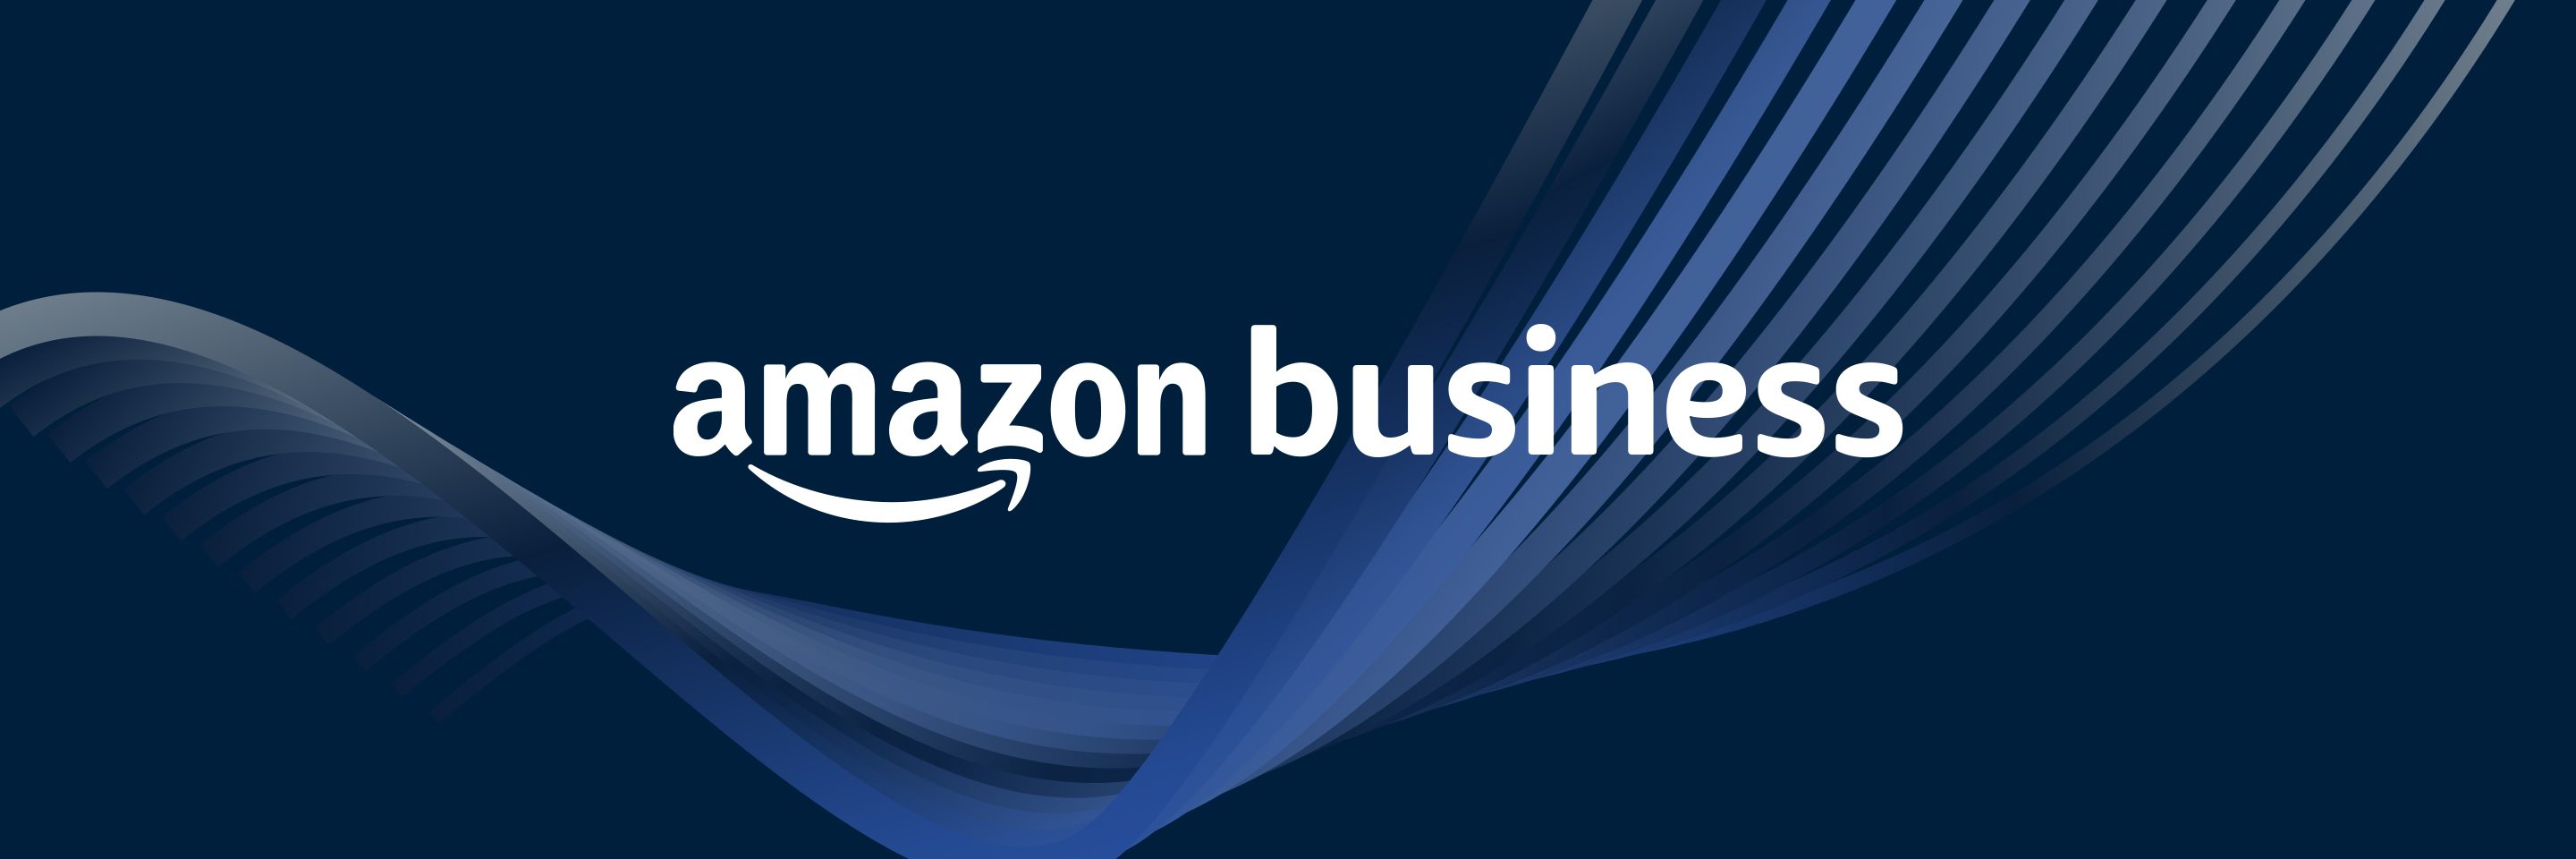 Amazon Business 